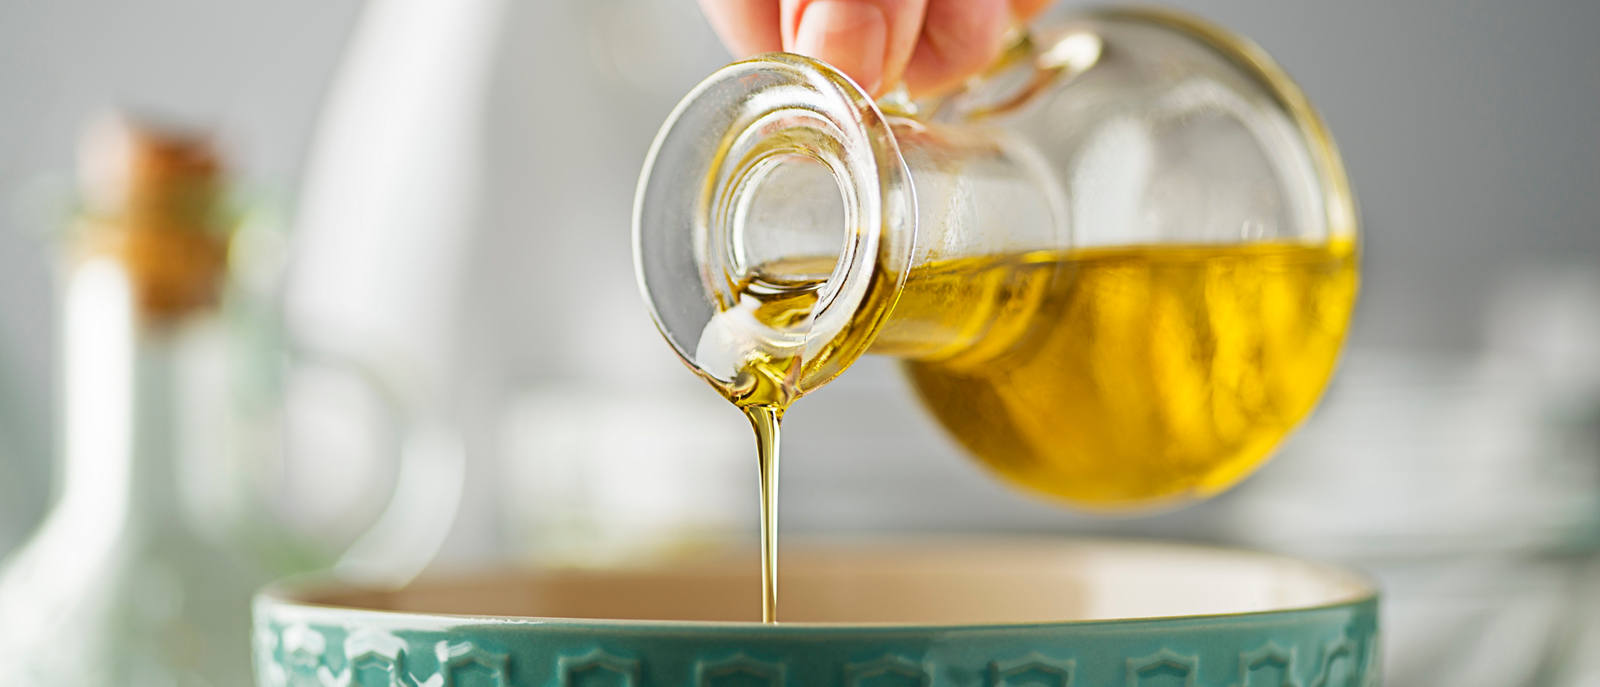 Weizenkeimöl – ein kleiner Keim voller Vitamin E